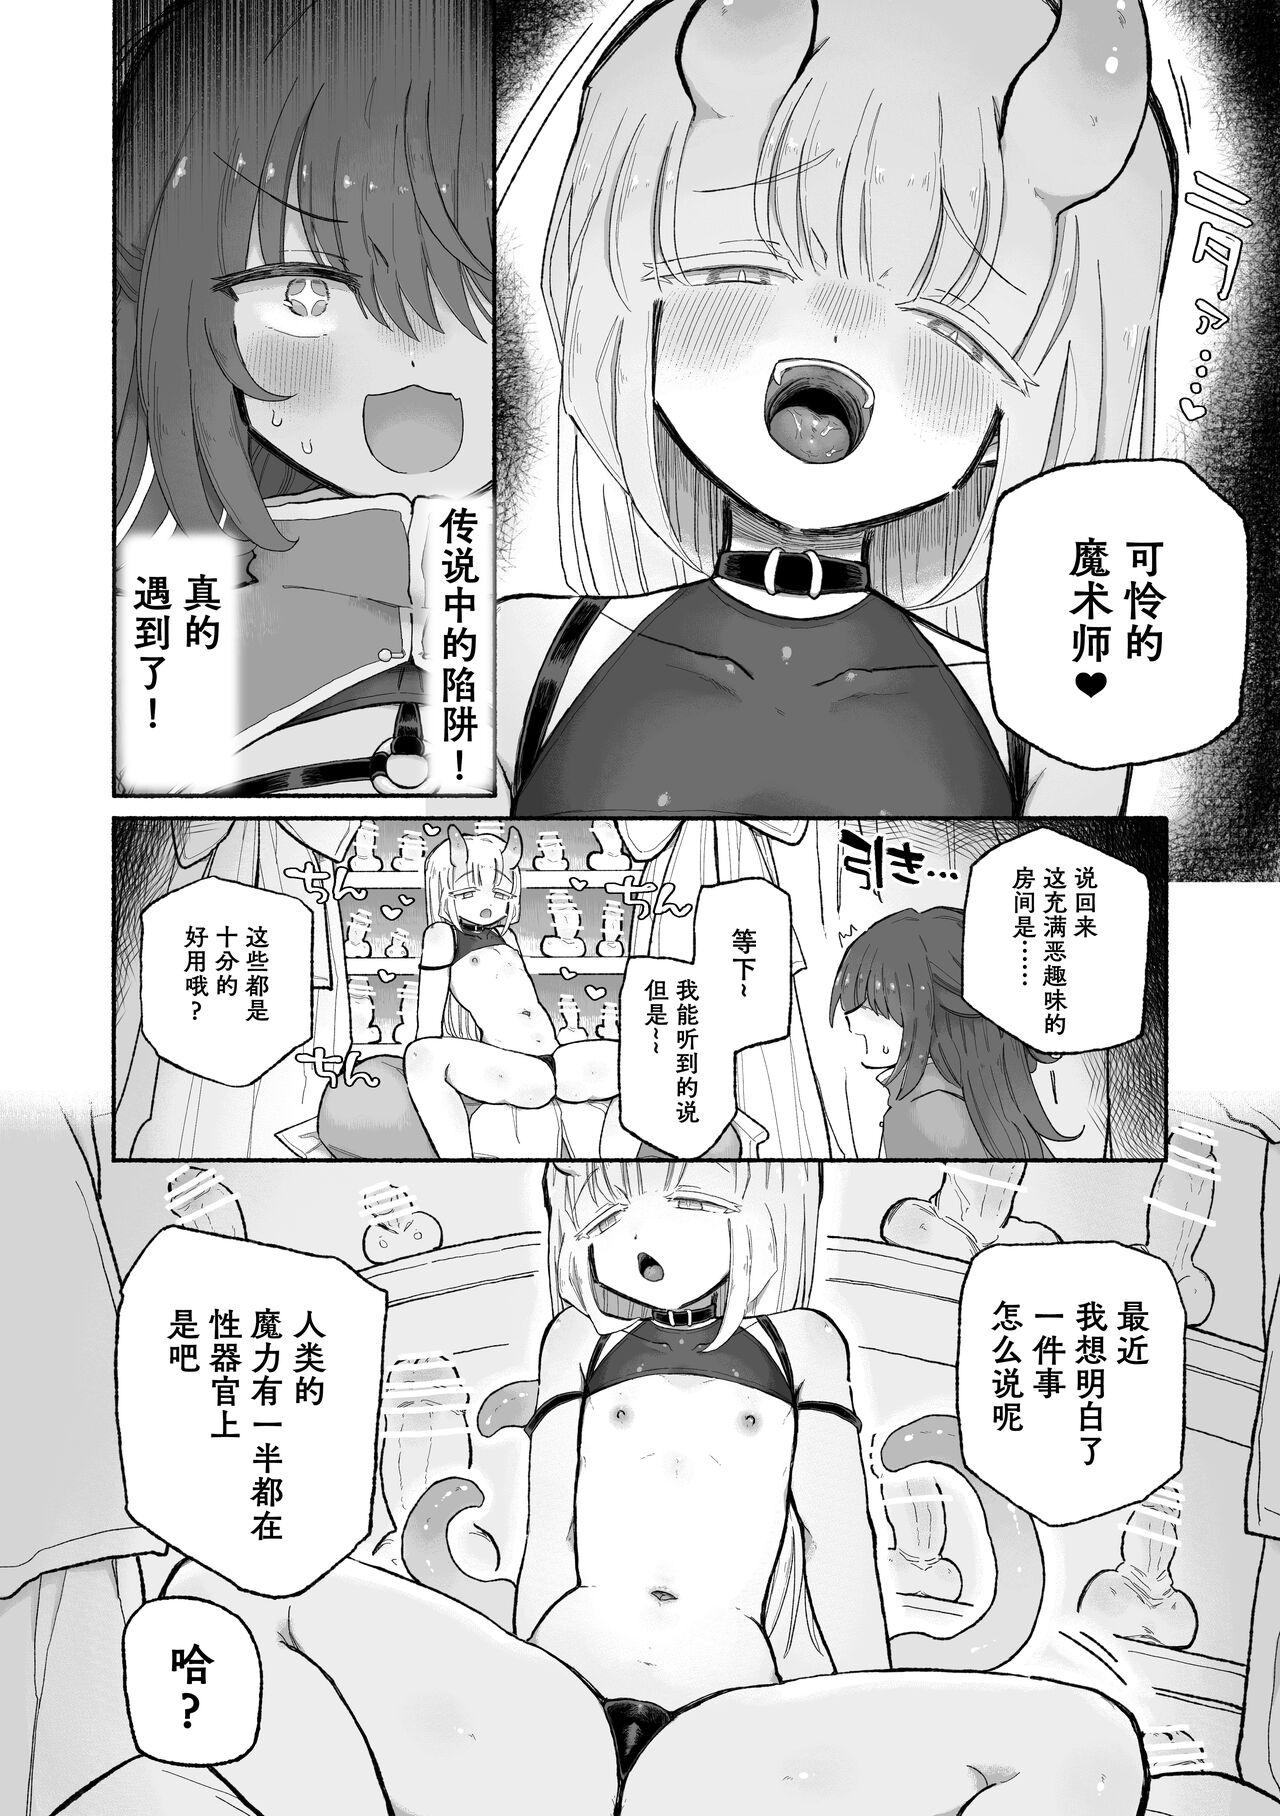 Anime Do hamari chui no kyosei danjon! 〜Mugen shasei no kairaku jigoku e yokoso〜 - Original Soapy Massage - Page 7